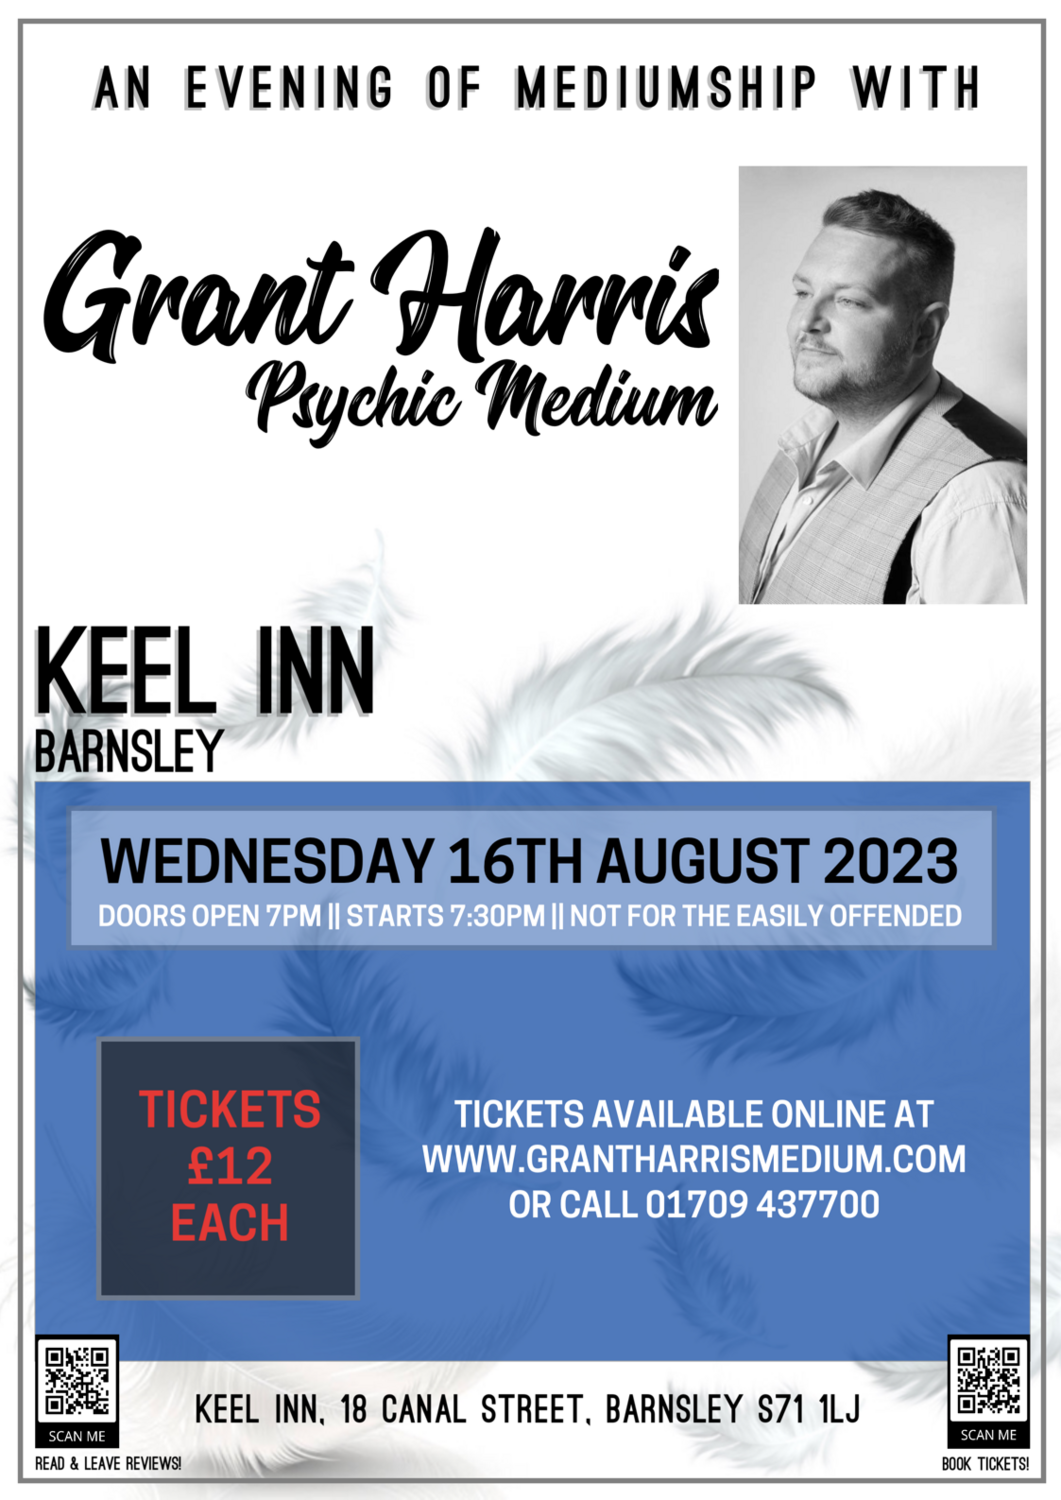 Keel Inn, Barnsley, Wednesday 16th August 2023